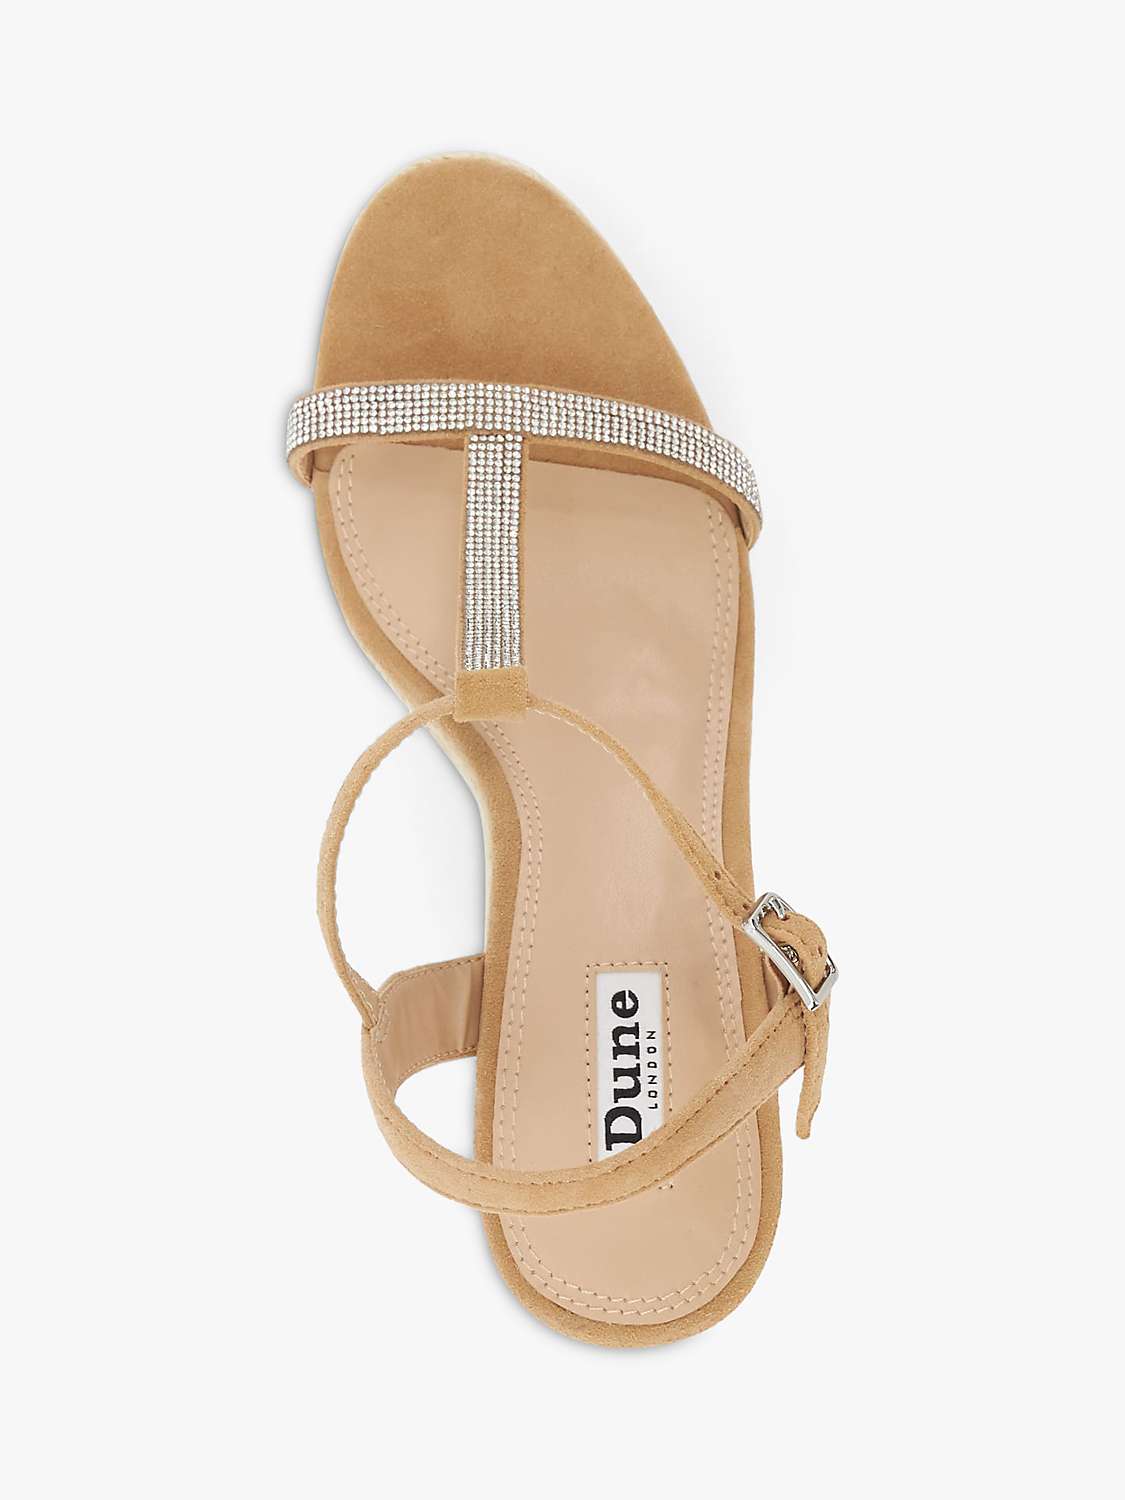 Buy Dune Kitten Suede Embellished T-Bar Wedge Sandals, Camel Online at johnlewis.com